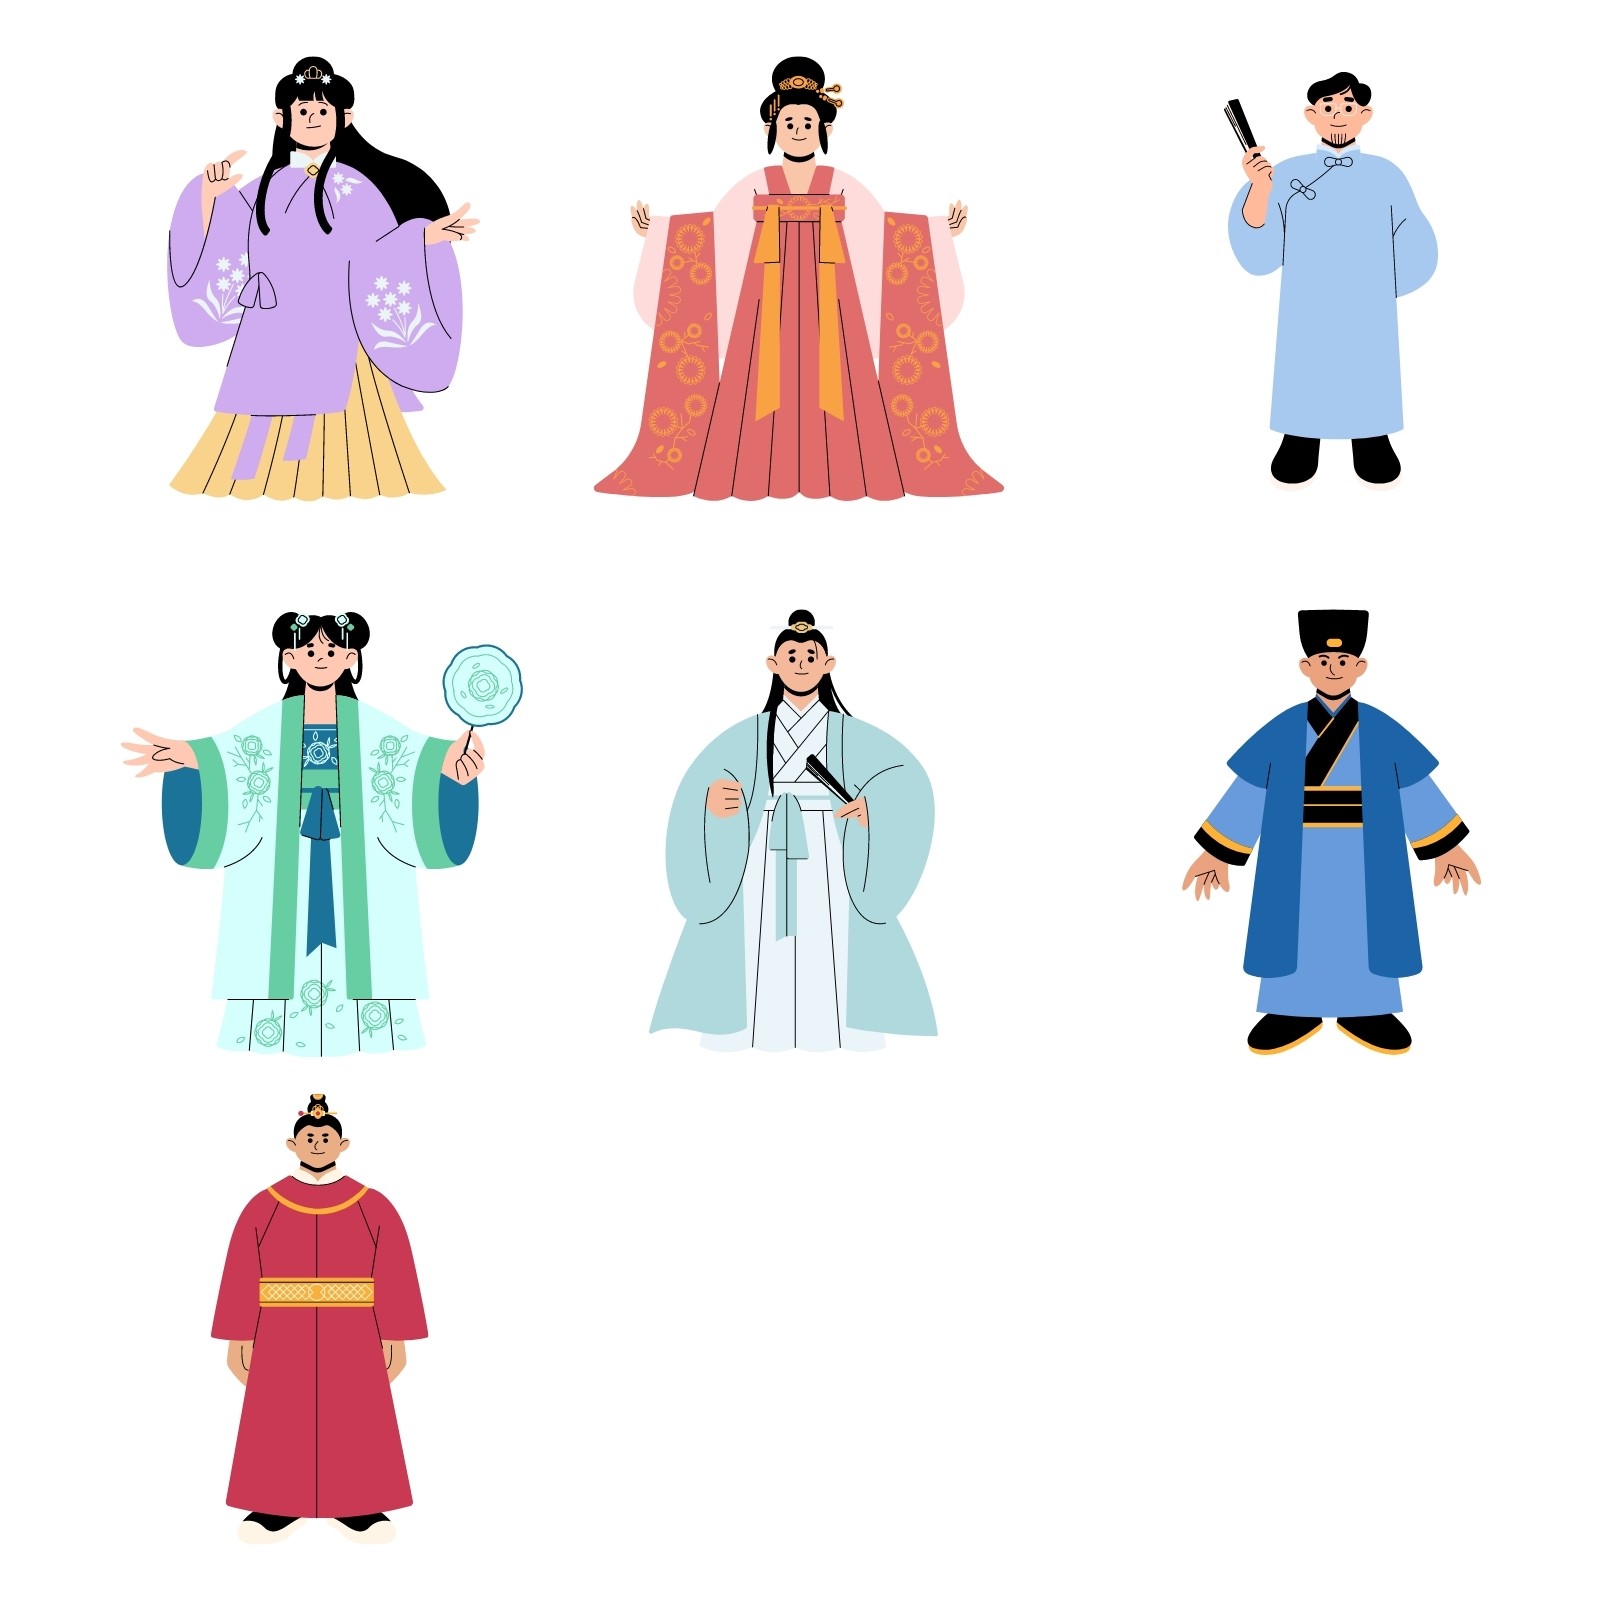 亚洲日式女性人物可爱漫画插画元素 - 模板 - Canva可画